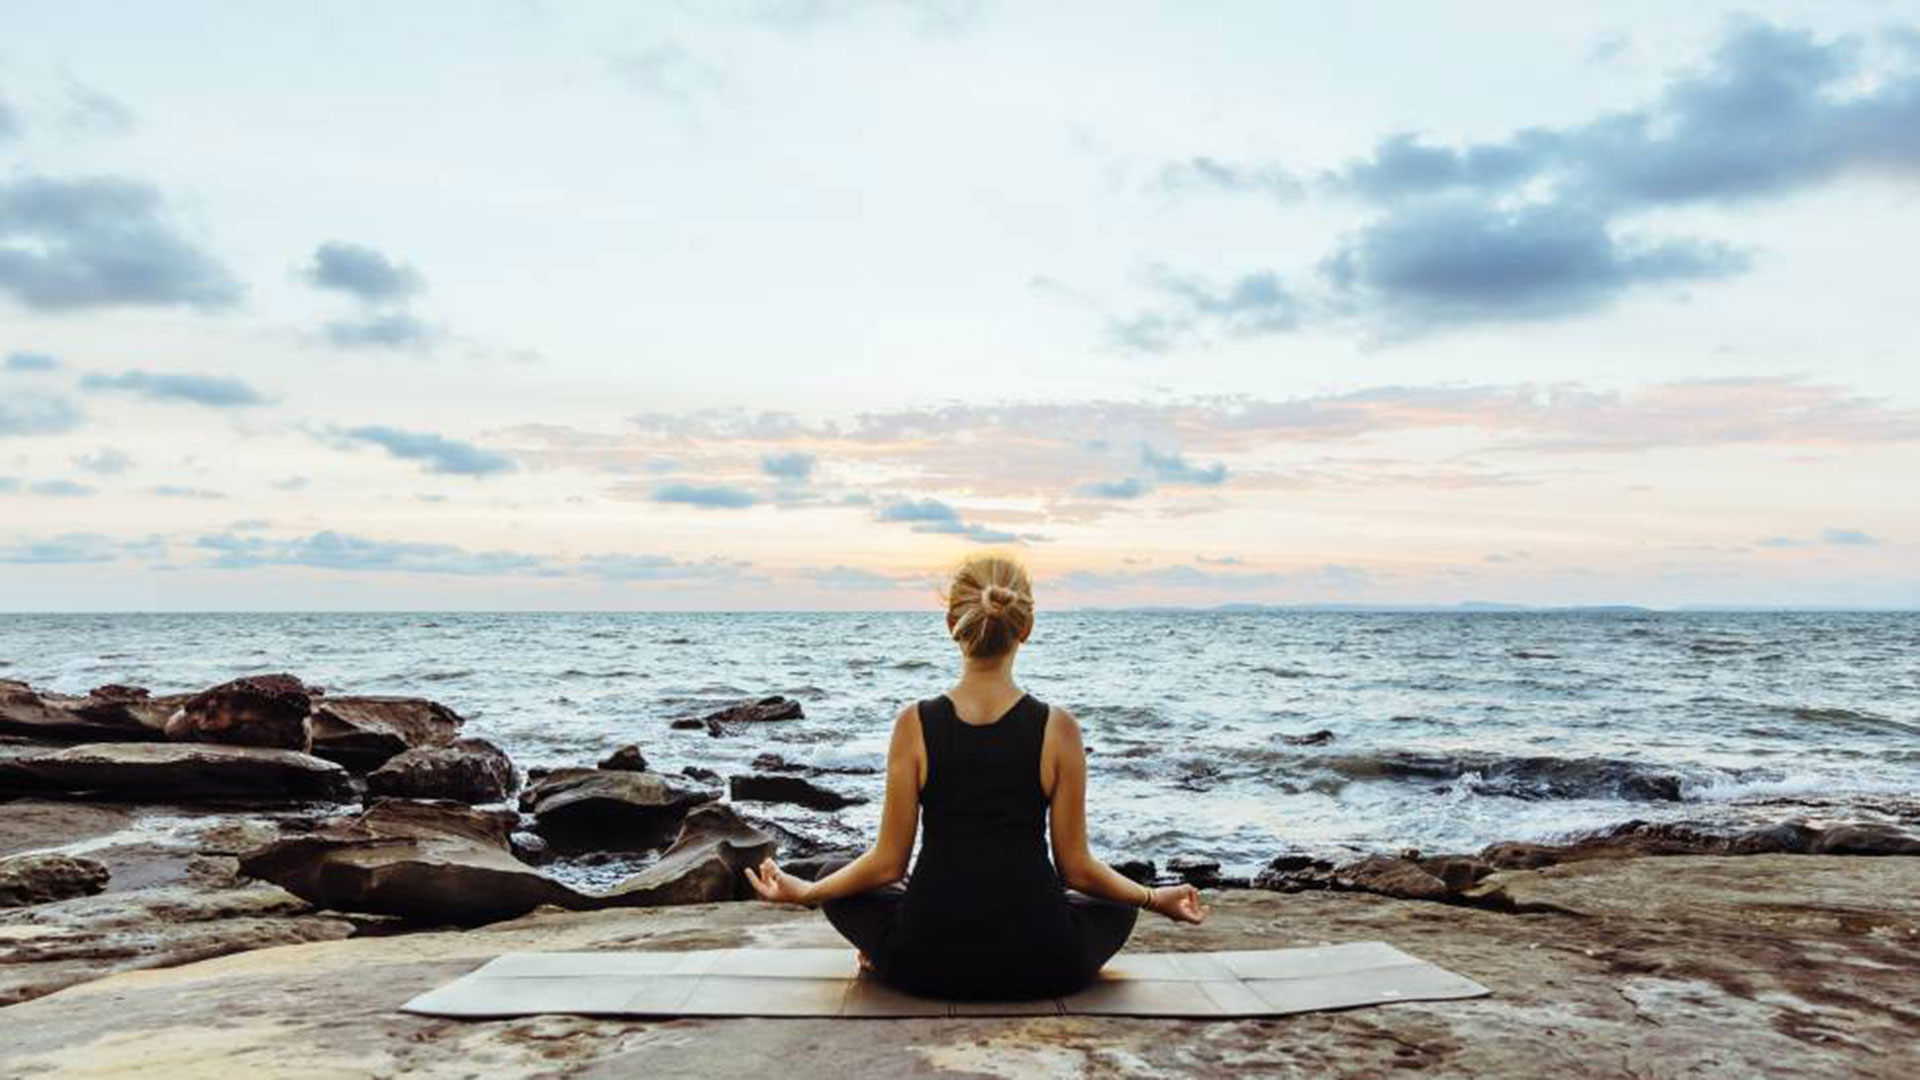 "La incorporación de técnicas de relajación, de meditación, en particular la práctica de “Sati”, hoy popularizada como mindfulness, puede ayudar a sostener la ansiedad en un cuadro obsesivo", expresó el psiquiatra